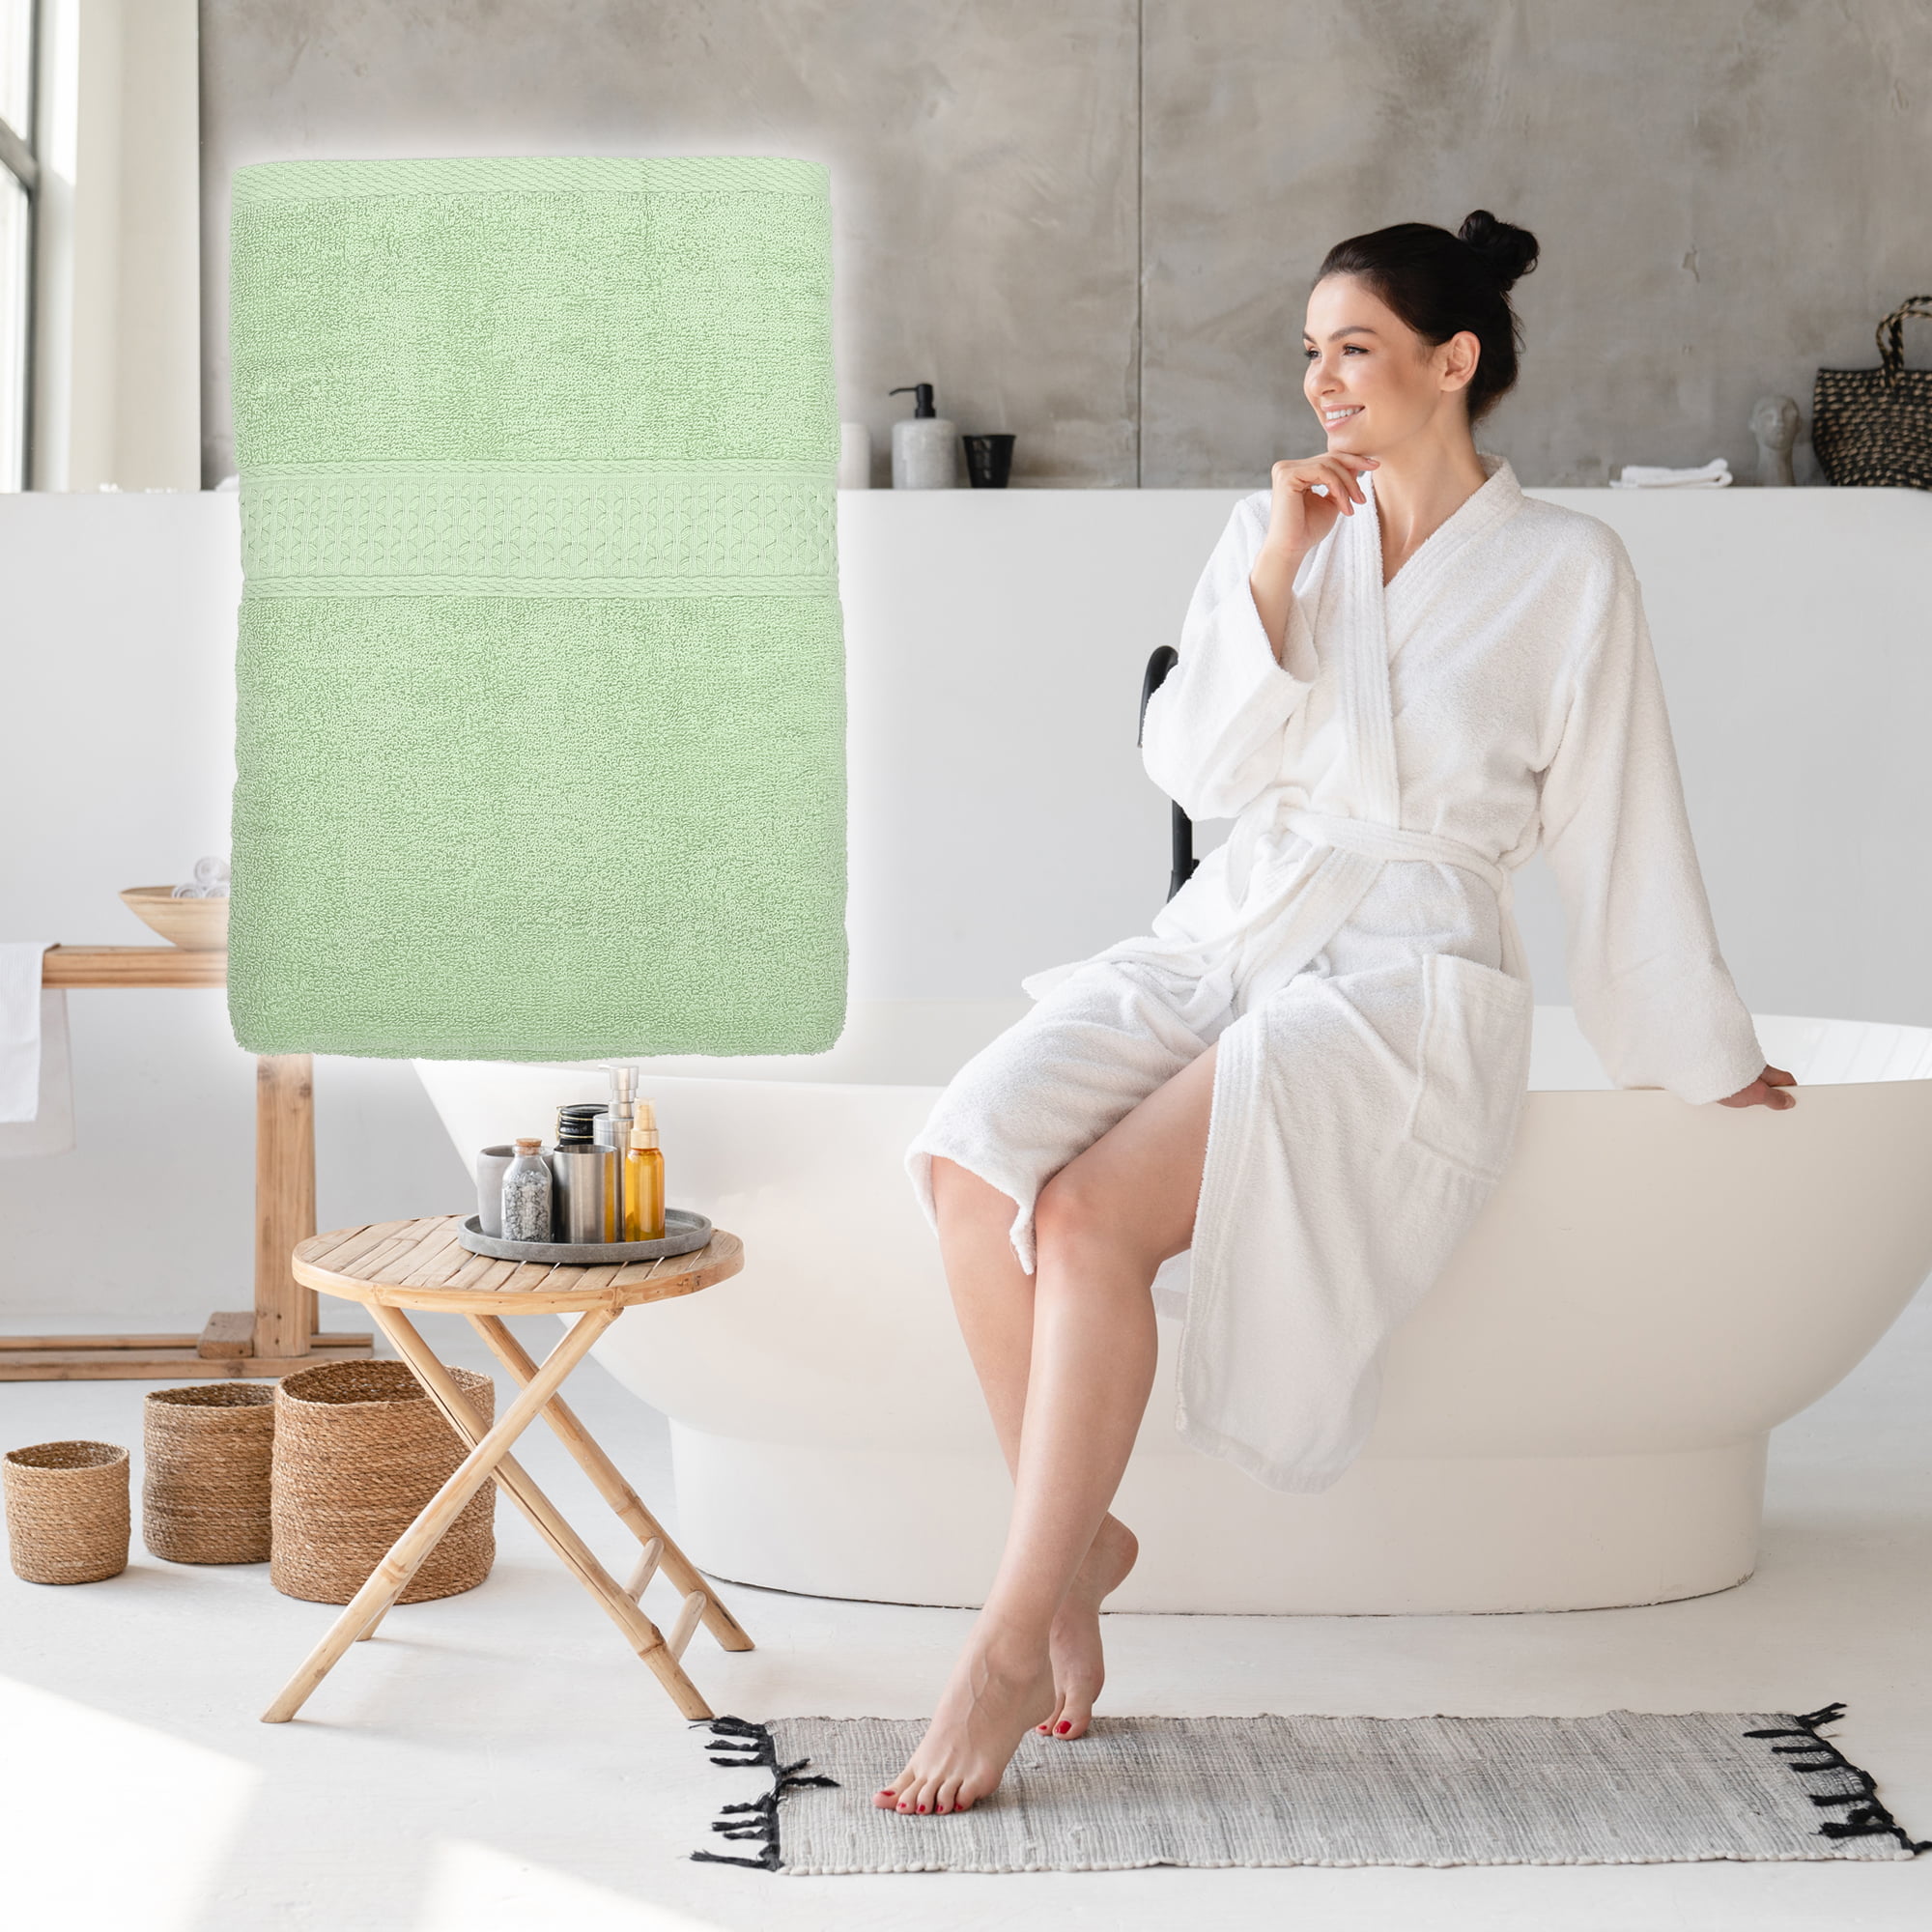 Bargains by Green - Calvin Klein 4-piece Hand/Washcloth Towel Set